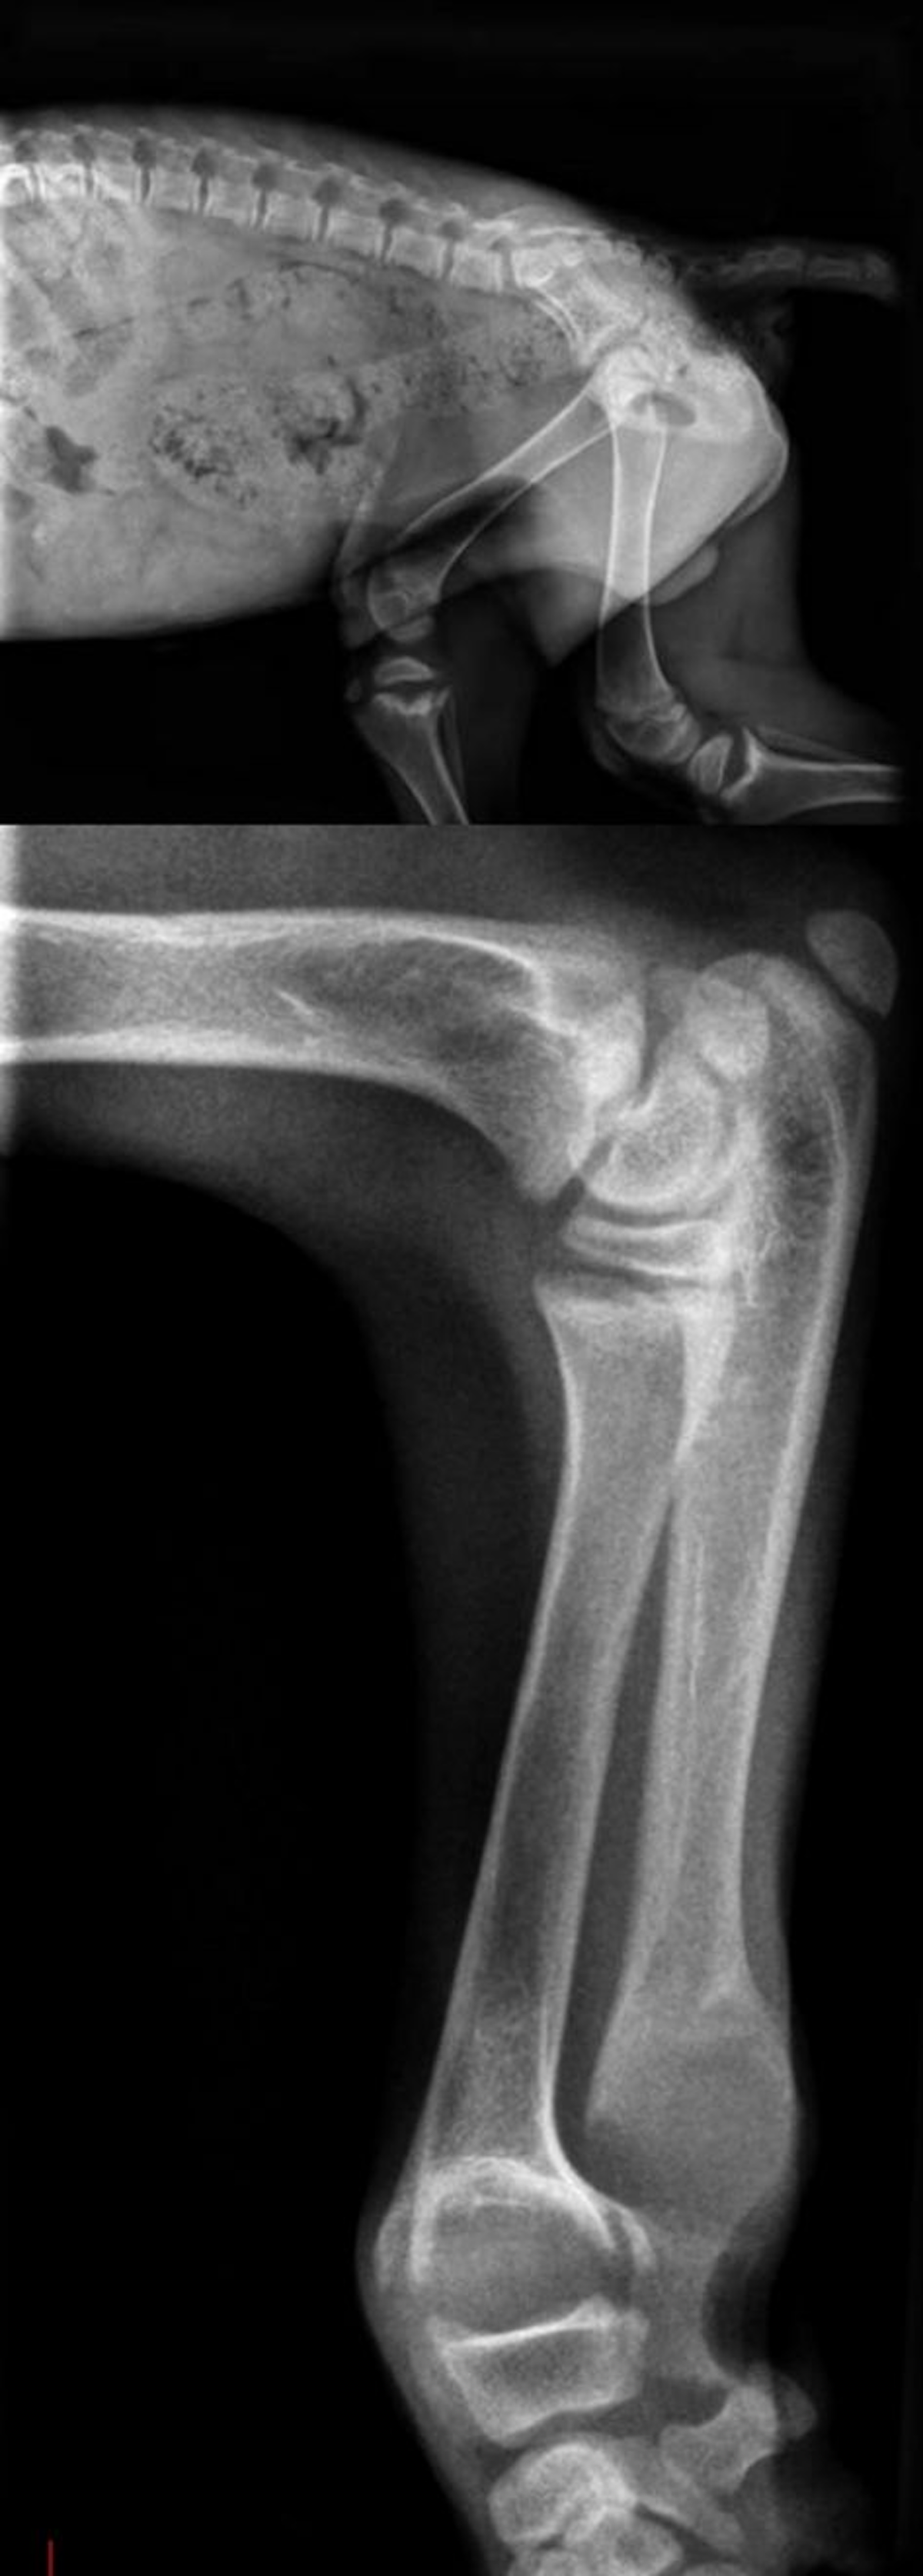 Radiografías laterales derechas de la pelvis y del cúbito/radio de un perro joven (1 año aproximadamente). La fisis del radio, del cúbito y de la tibia muestran un gran ensanchamiento con forma de copa y se observa una osteopenia difusa. Estos hallazgos son consistentes con la presencia de raquitismo.